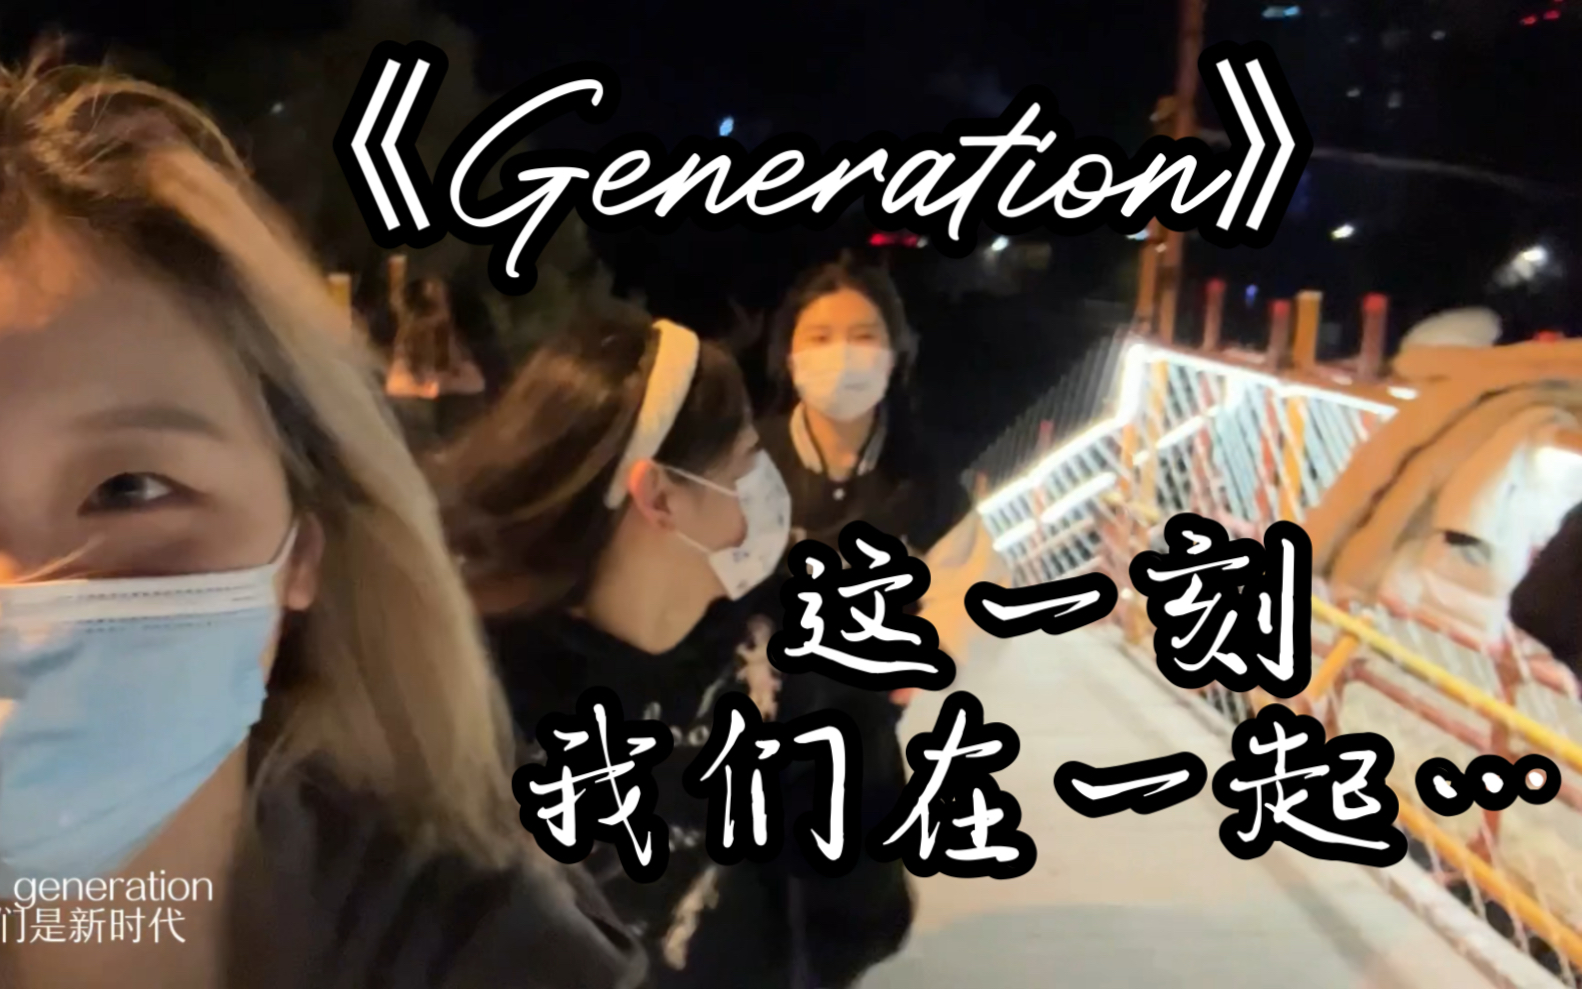 【Generation】“这一刻我们在一起”